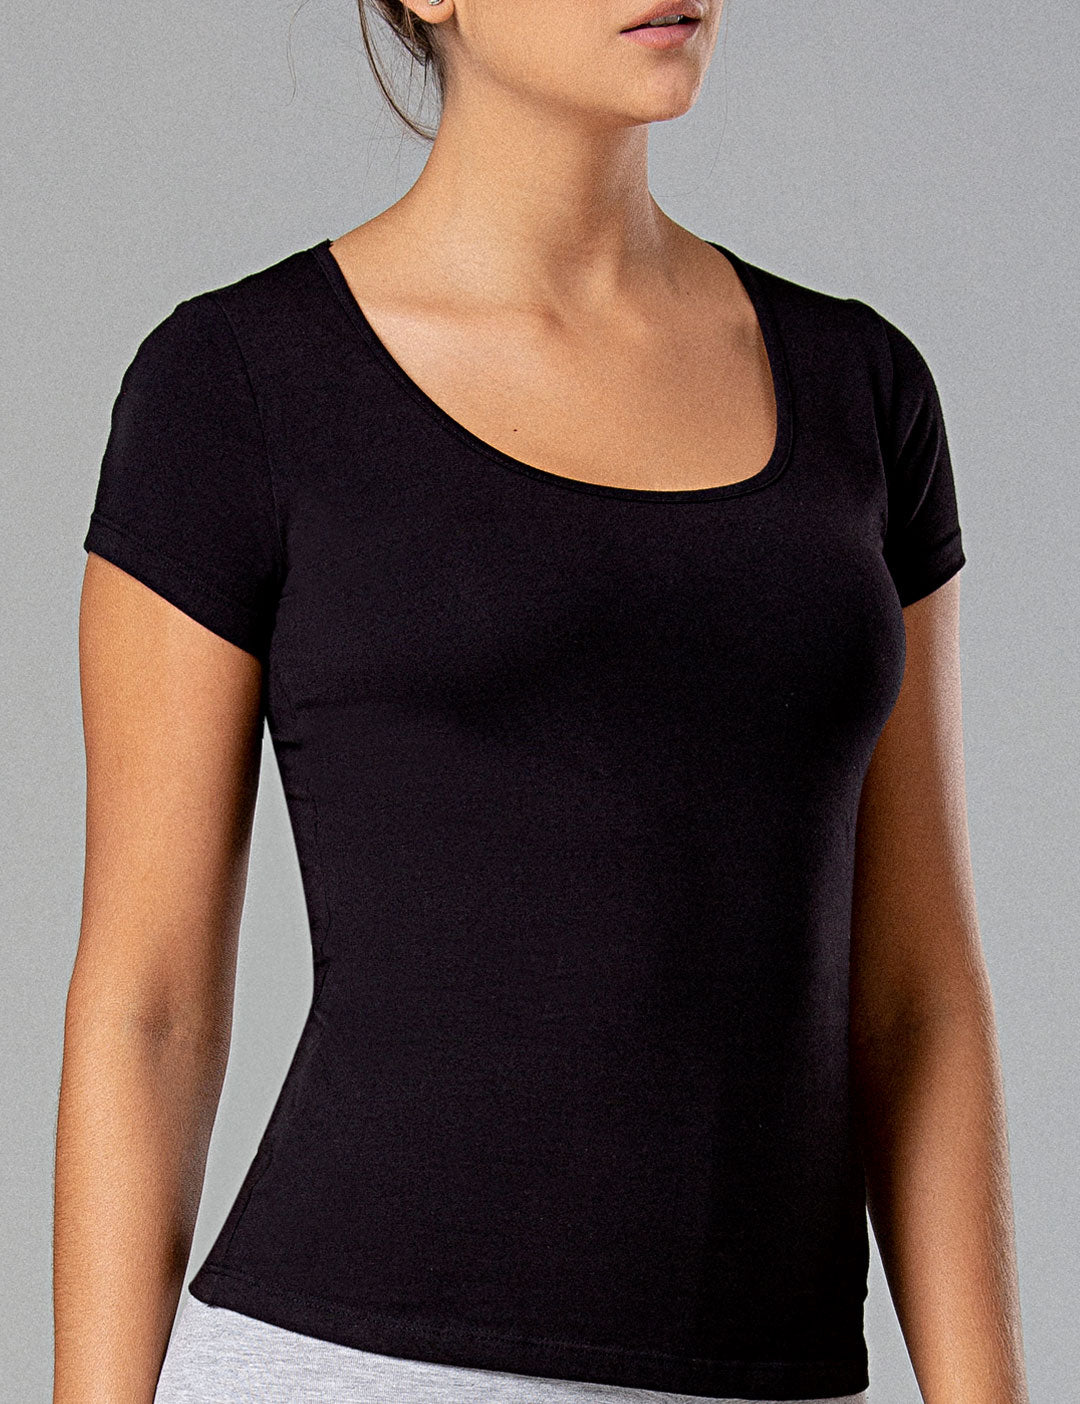 Yuccalley Camiseta básica de verano para mujer, manga corta, cuello  redondo, camiseta básica